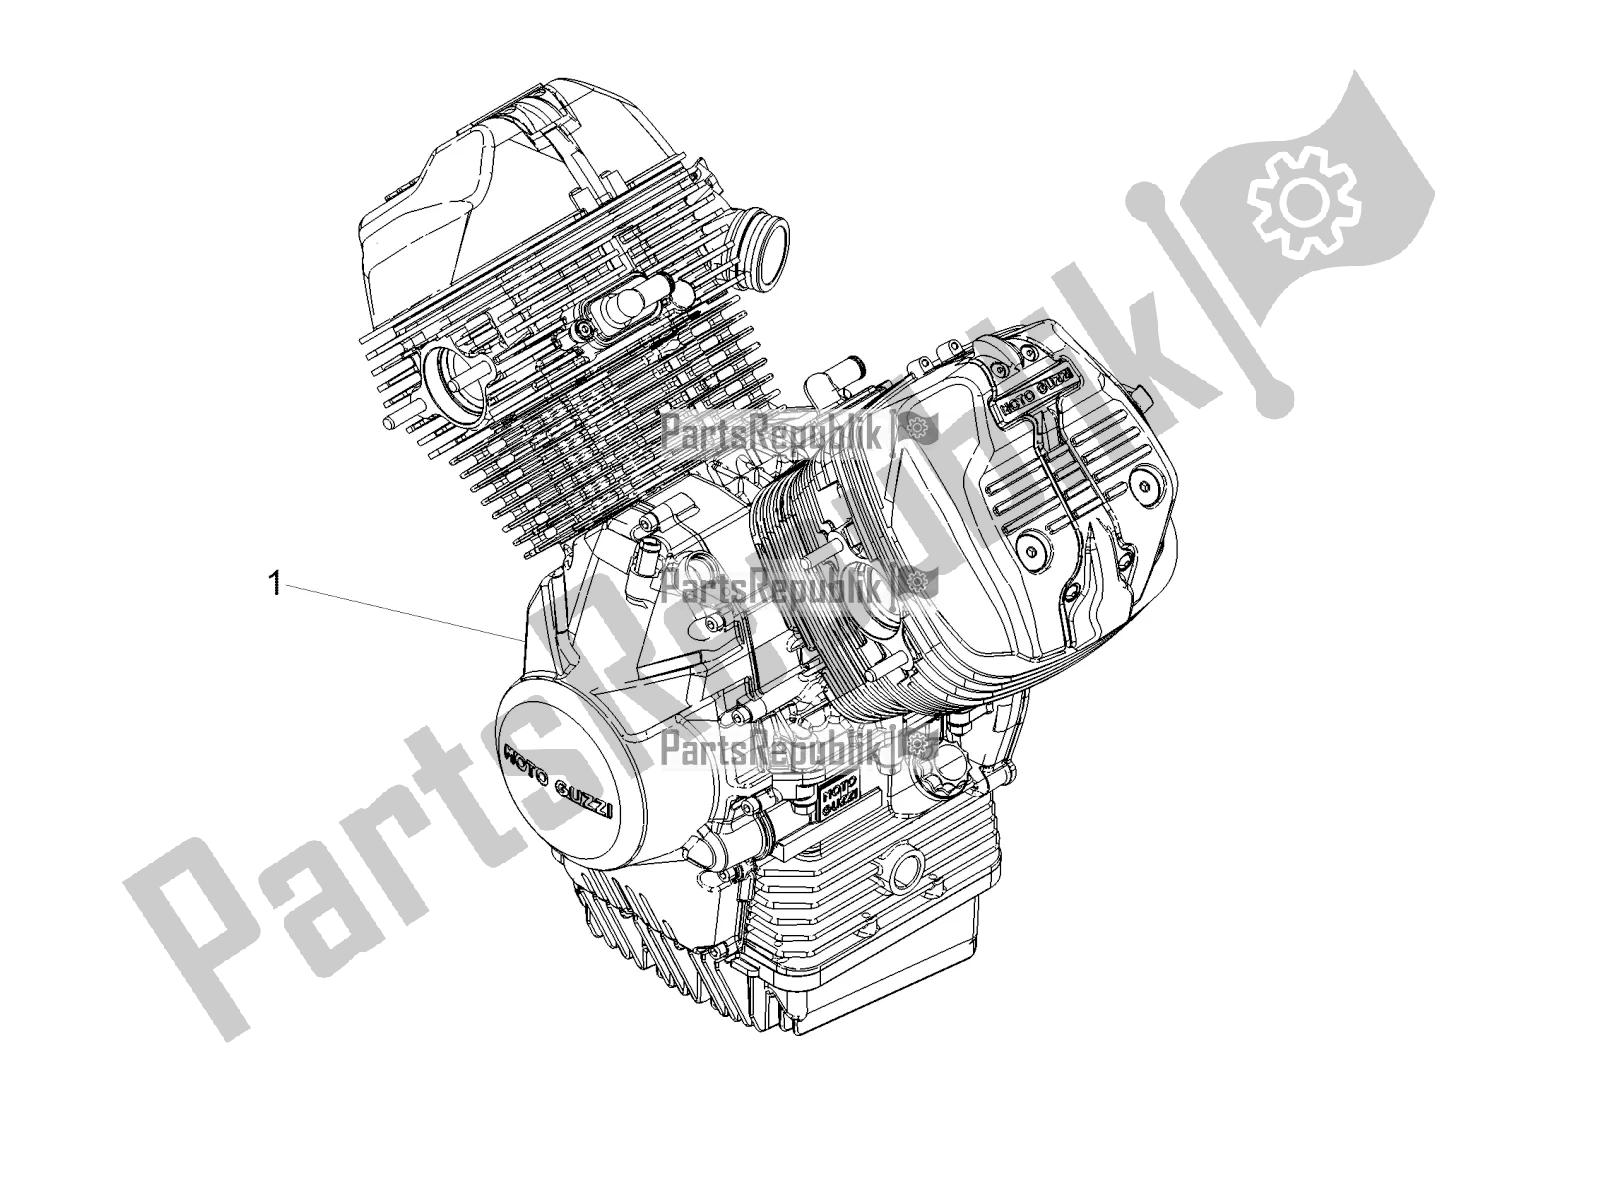 Toutes les pièces pour le Levier Partiel Pour Compléter Le Moteur du Moto-Guzzi V7 III Milano 750 ABS 2018